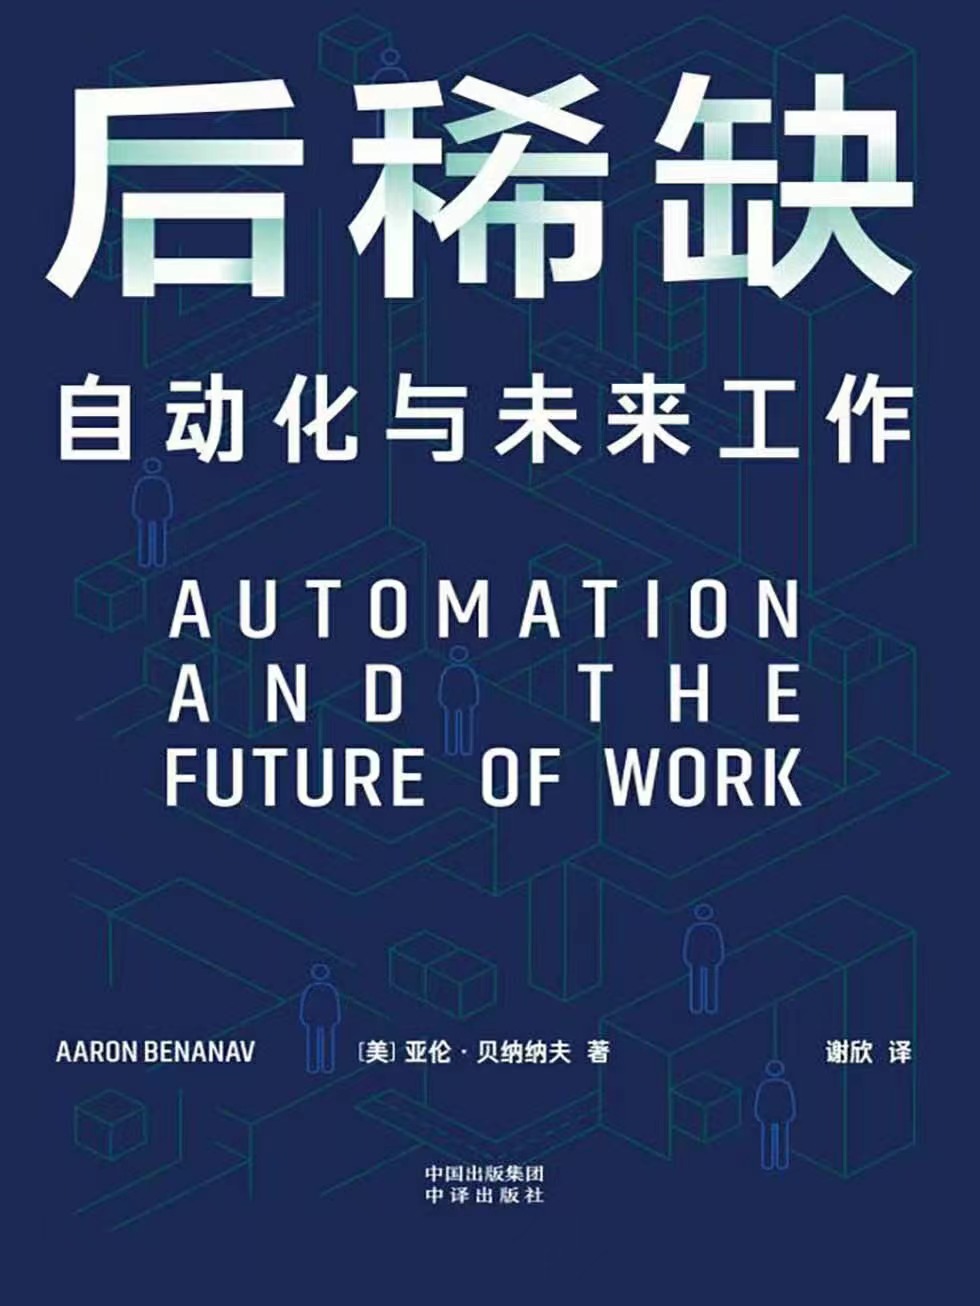 【电子书上新】 ★《后稀缺》 ​～自动化与未来工作